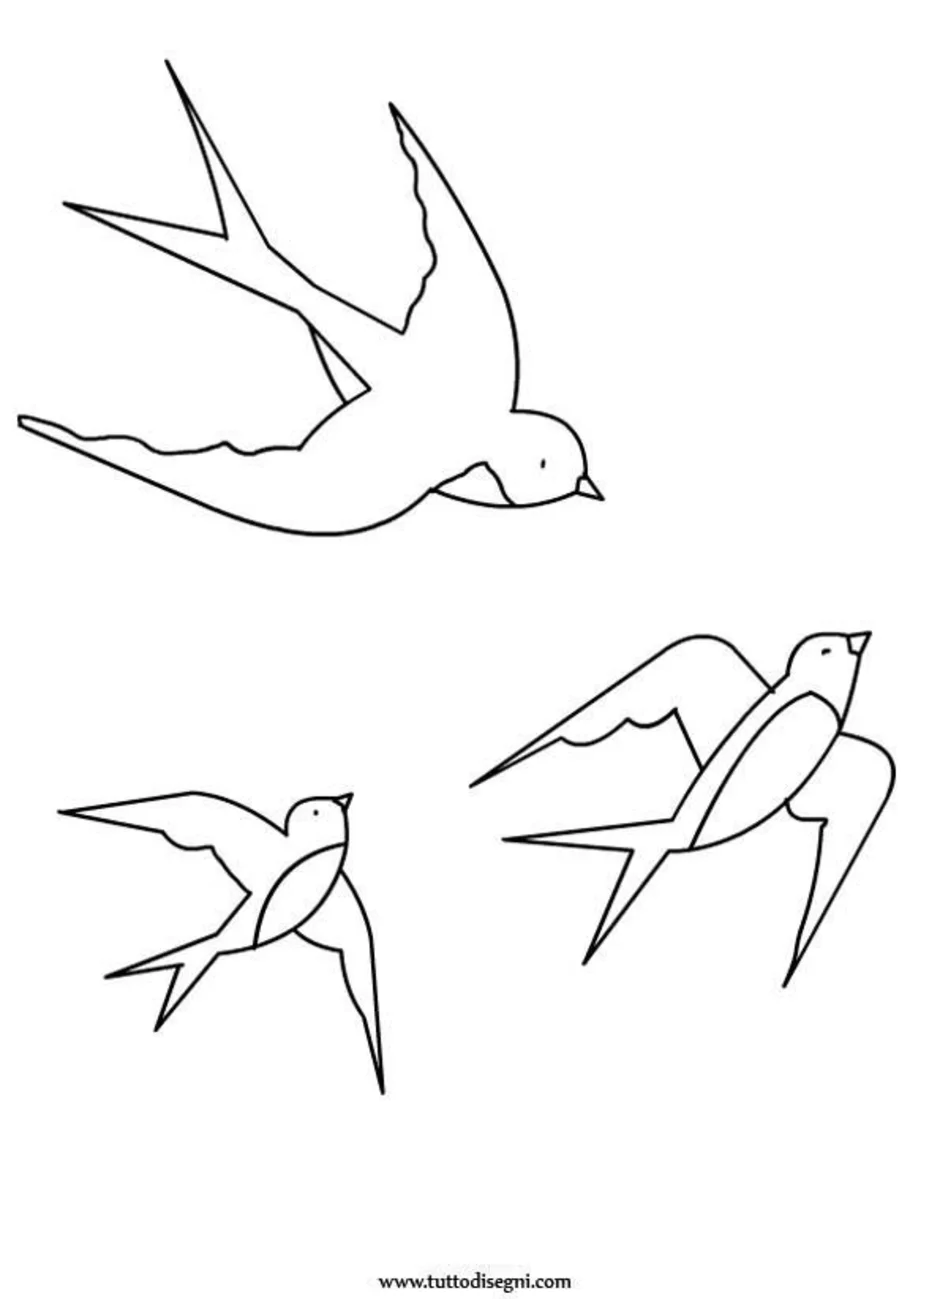 Как нарисовать ласточку для детей. Нарисовать перелетную птицу ласточку. Трафарет ласточки для вырезания. Ласточка рисунок. Ласточка раскраска для детей.